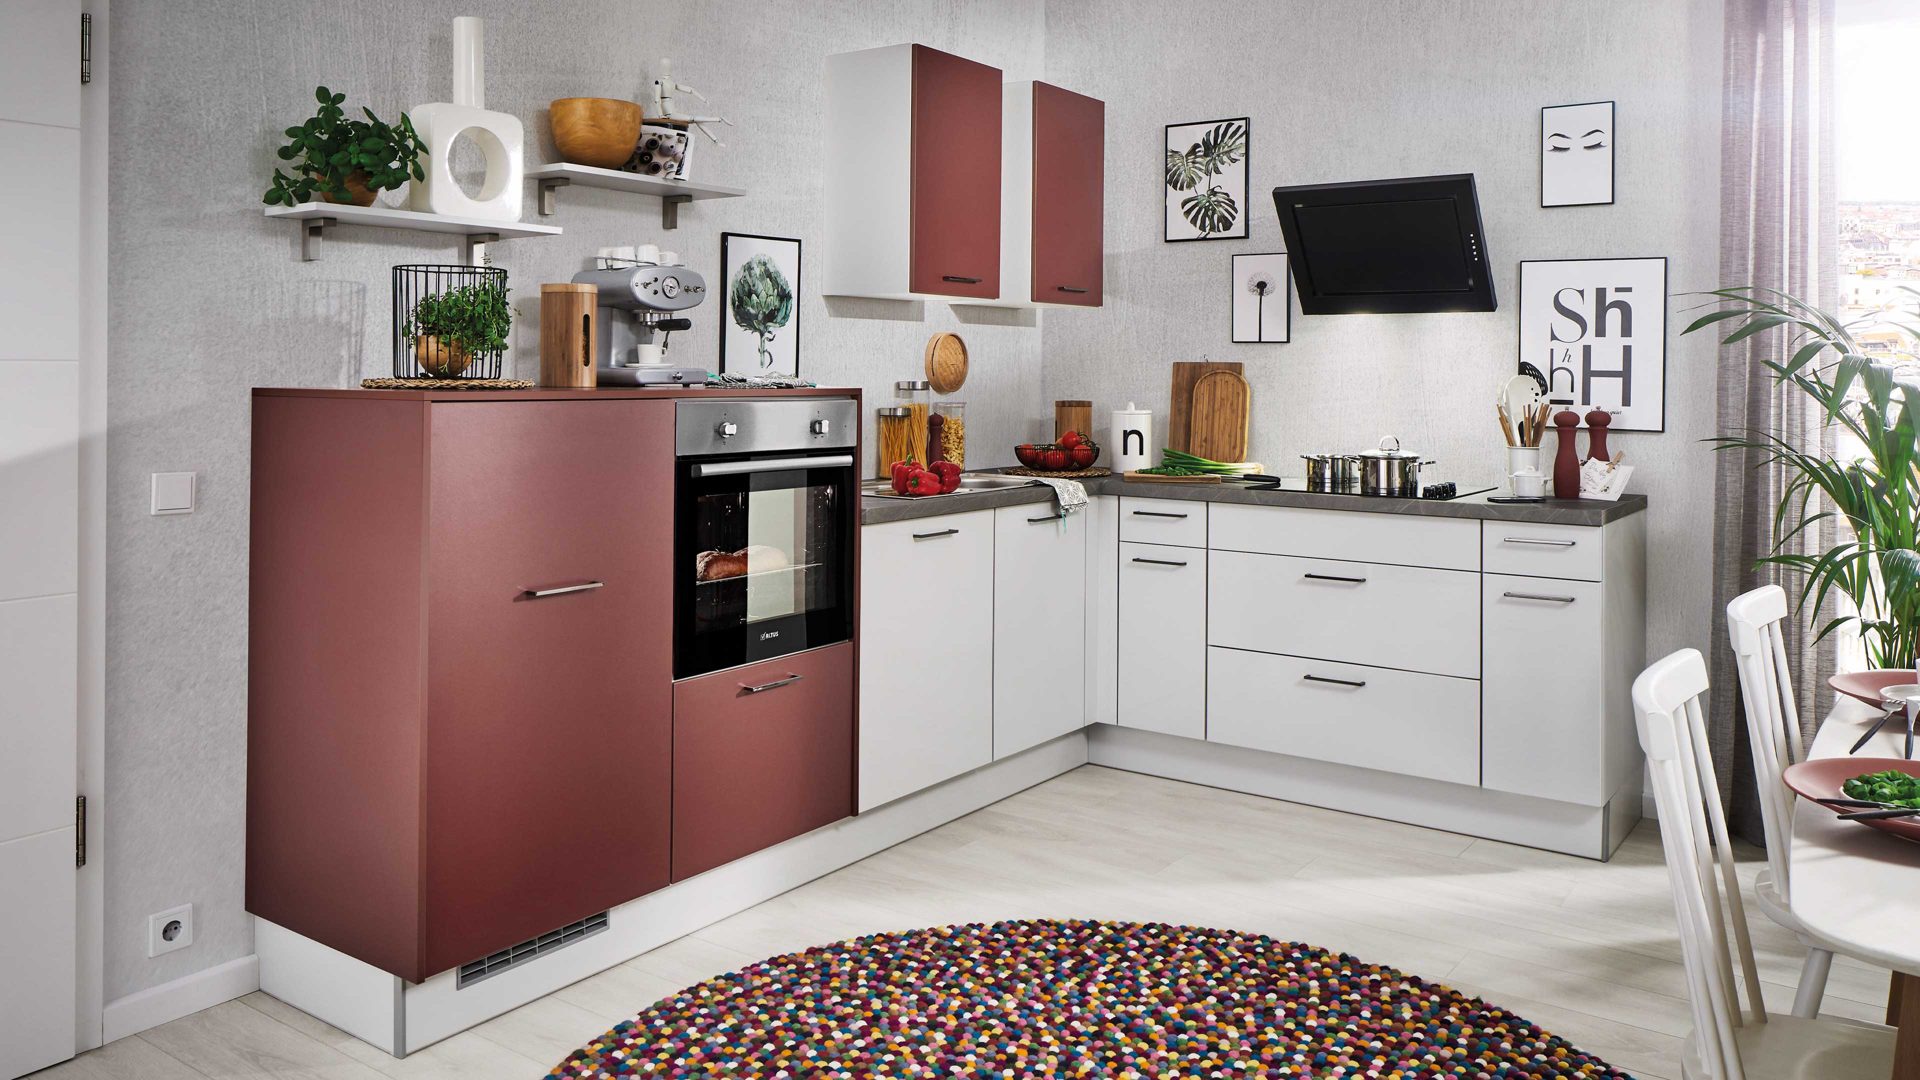 Einbauküche Pino küchen aus Holz in Dunkelrot pino Einbauküche inklusive Einbaugeräte Rubinrot & Alpinweiß - Stellfläche ca. 298 x 205 cm